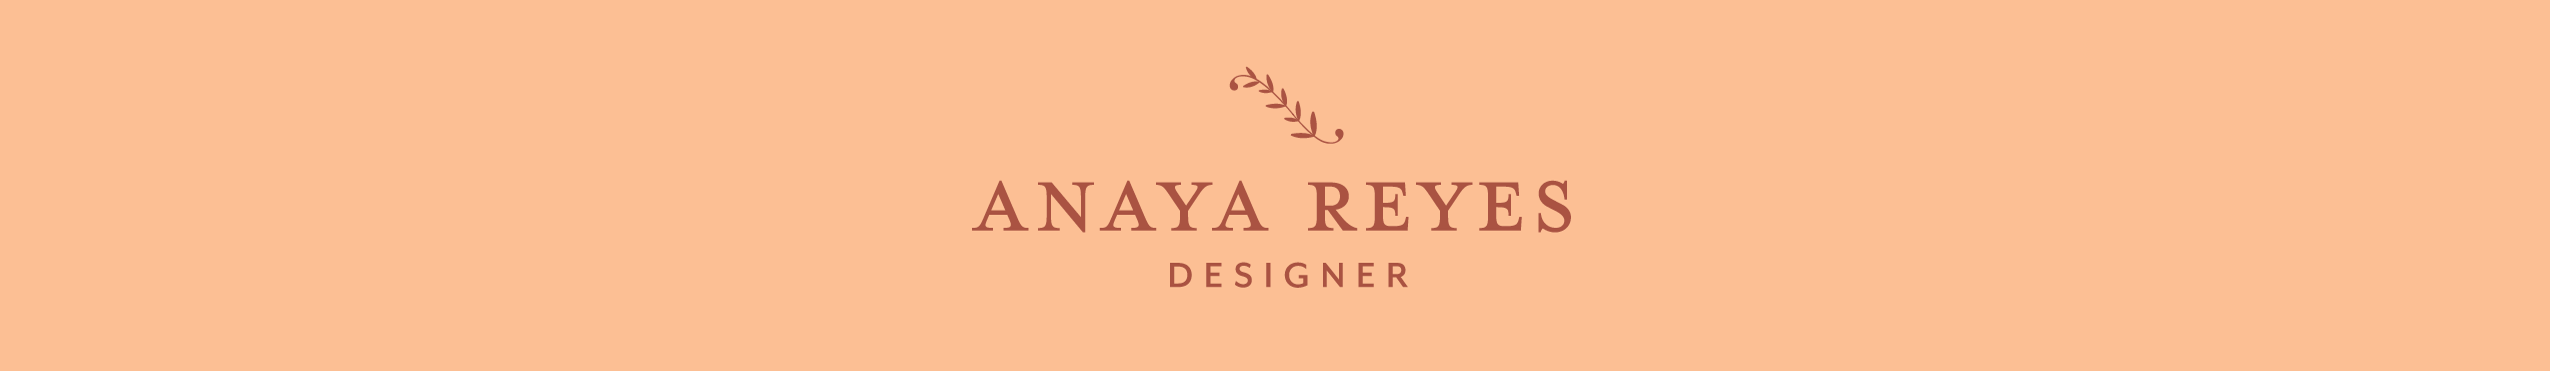 Anaya Reyes's profile banner